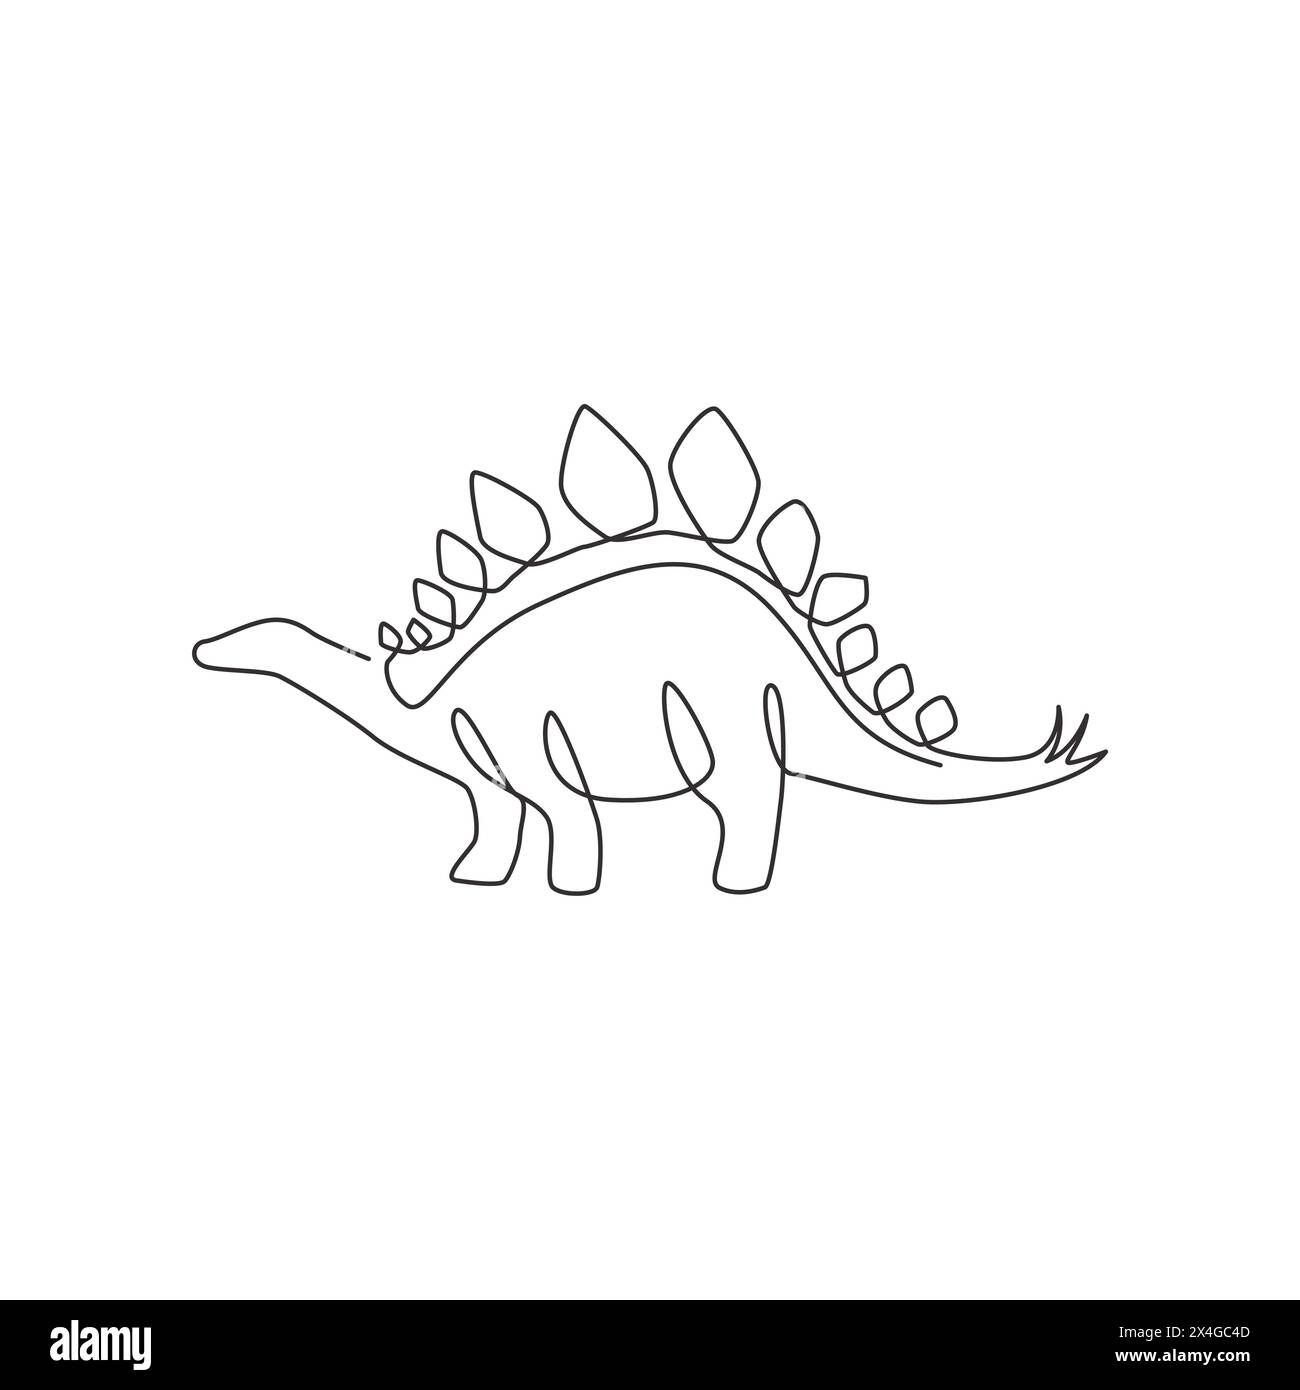 Disegno a linea singola continua di stegosaurus spinoso per l'identità del logo. Concetto di mascotte animali preistorica per l'icona del parco divertimenti a tema dei dinosauri Illustrazione Vettoriale